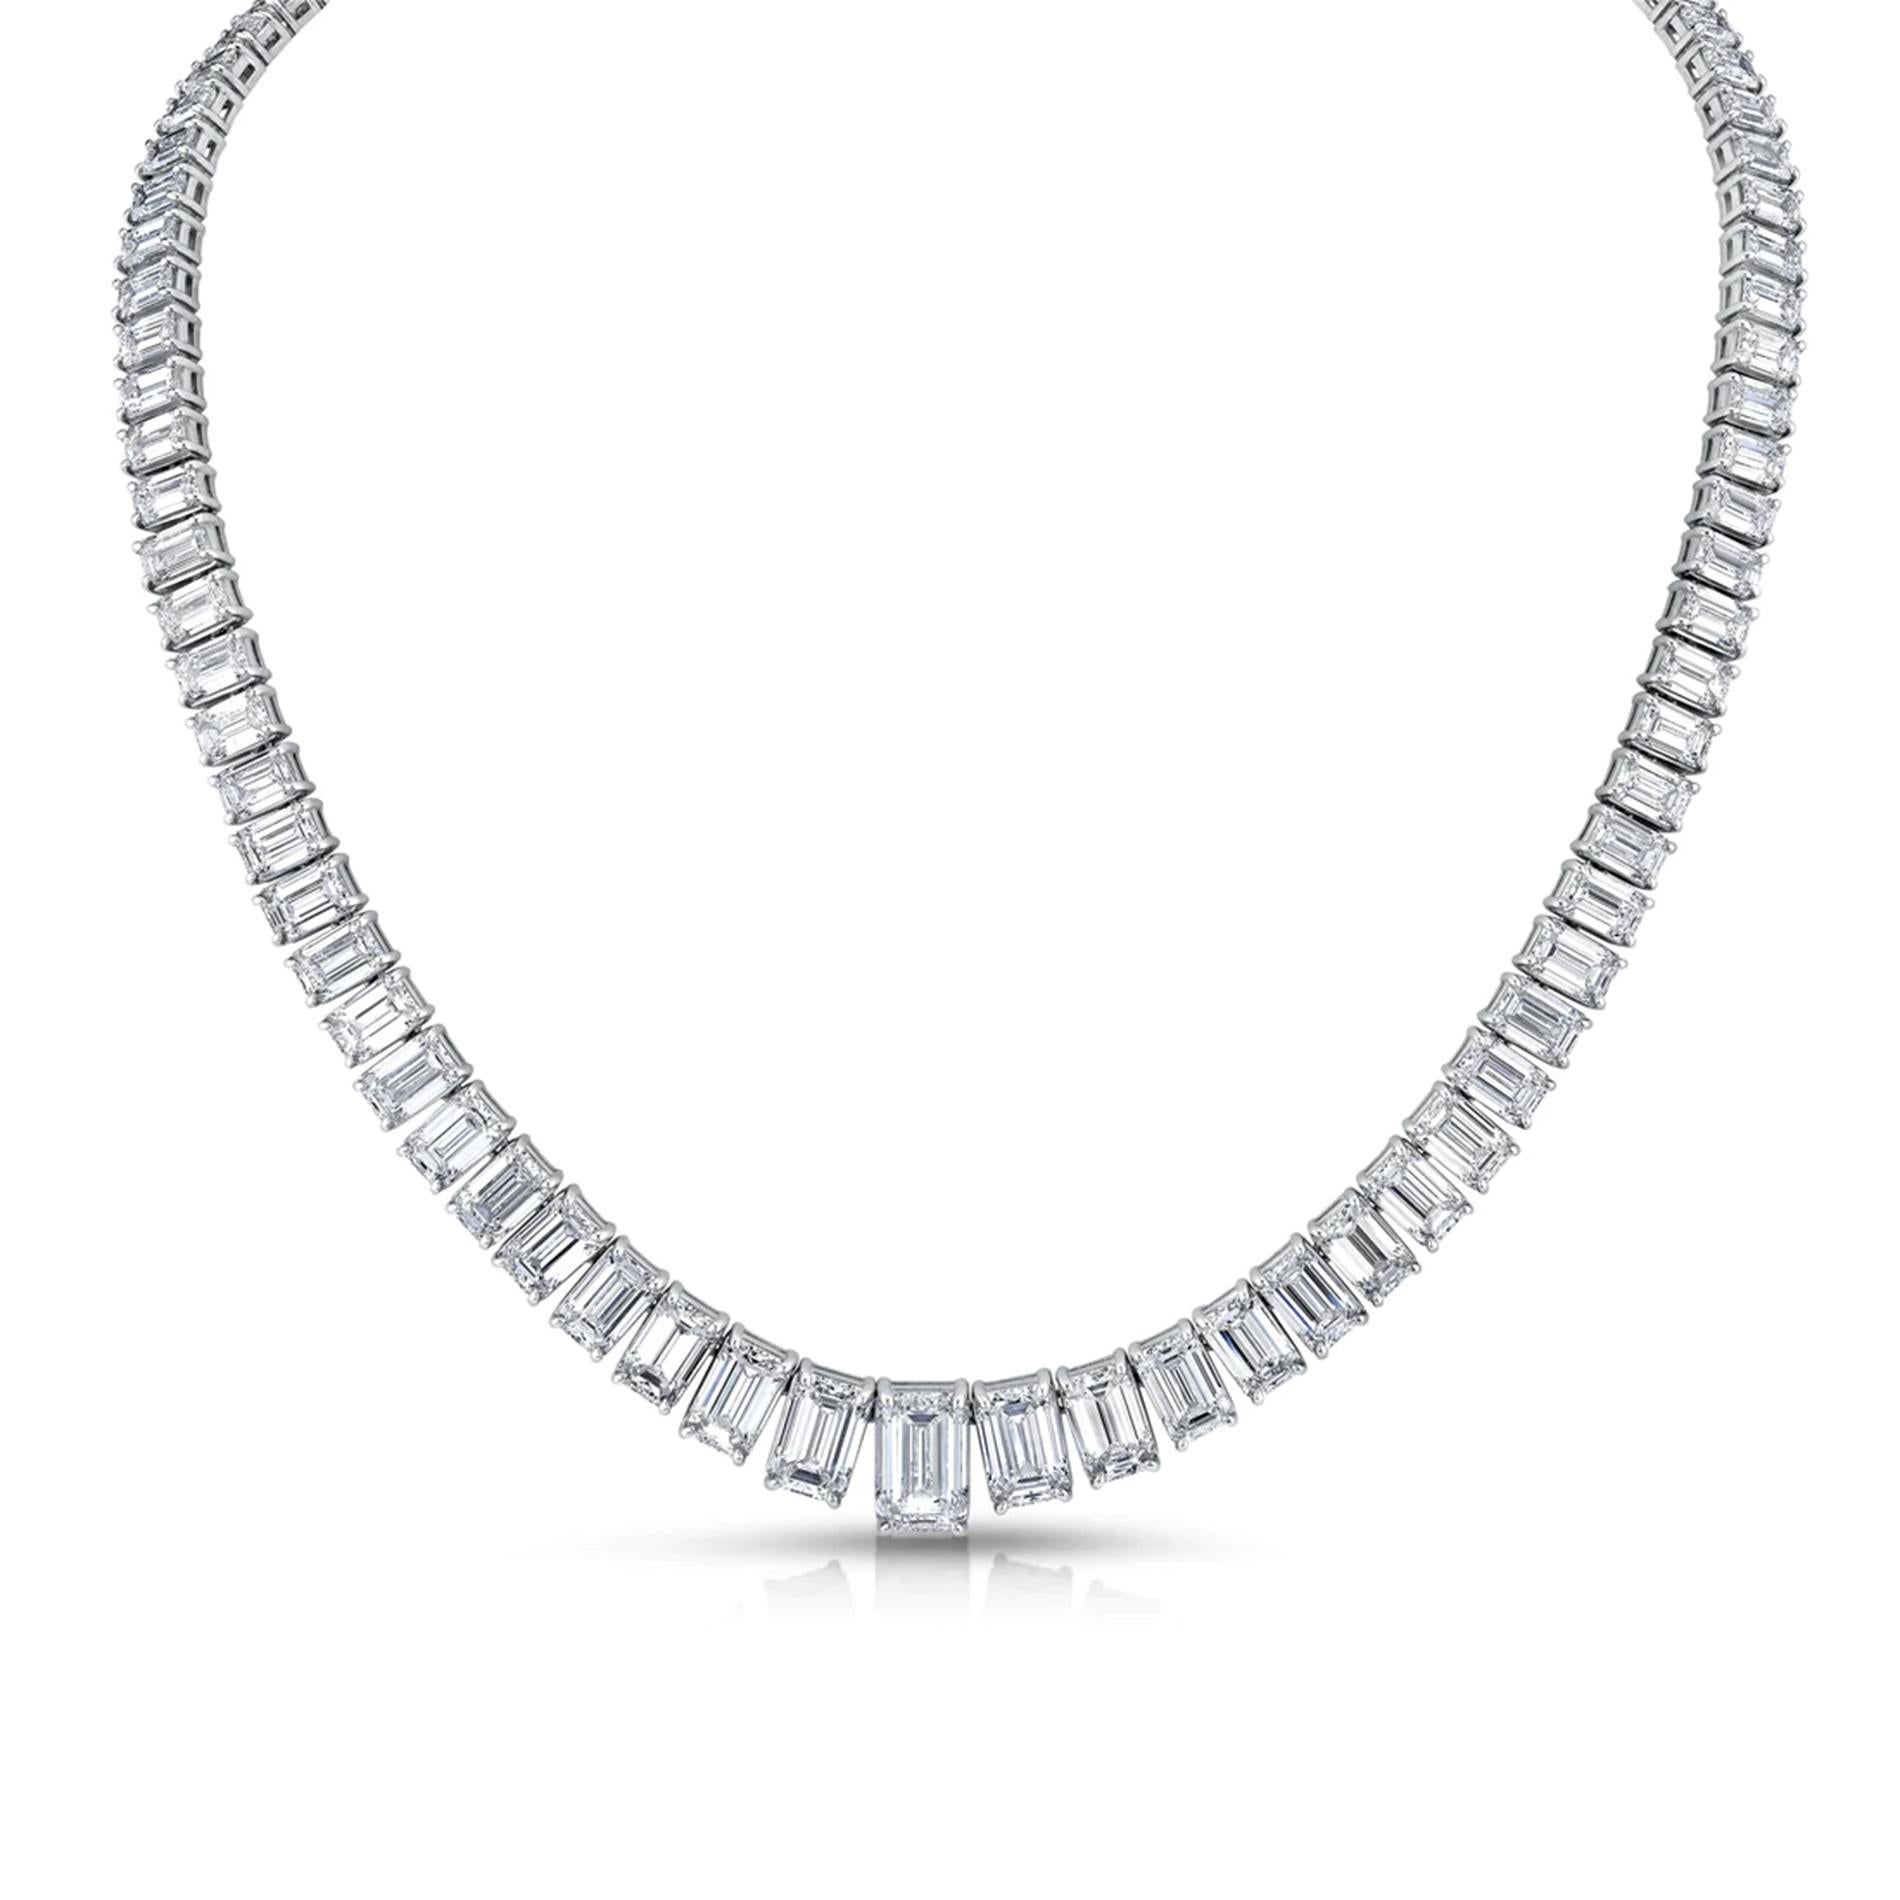 Erhöhen Sie Ihre Eleganz mit unserer exquisiten 19-Zoll-Tennis-Halskette, die sorgfältig aus Platin gefertigt und mit fesselnden Diamanten im Smaragdschliff verziert ist.

Jeder Diamant ist fachmännisch in einer sicheren Vier-Zacken-Fassung gefasst,